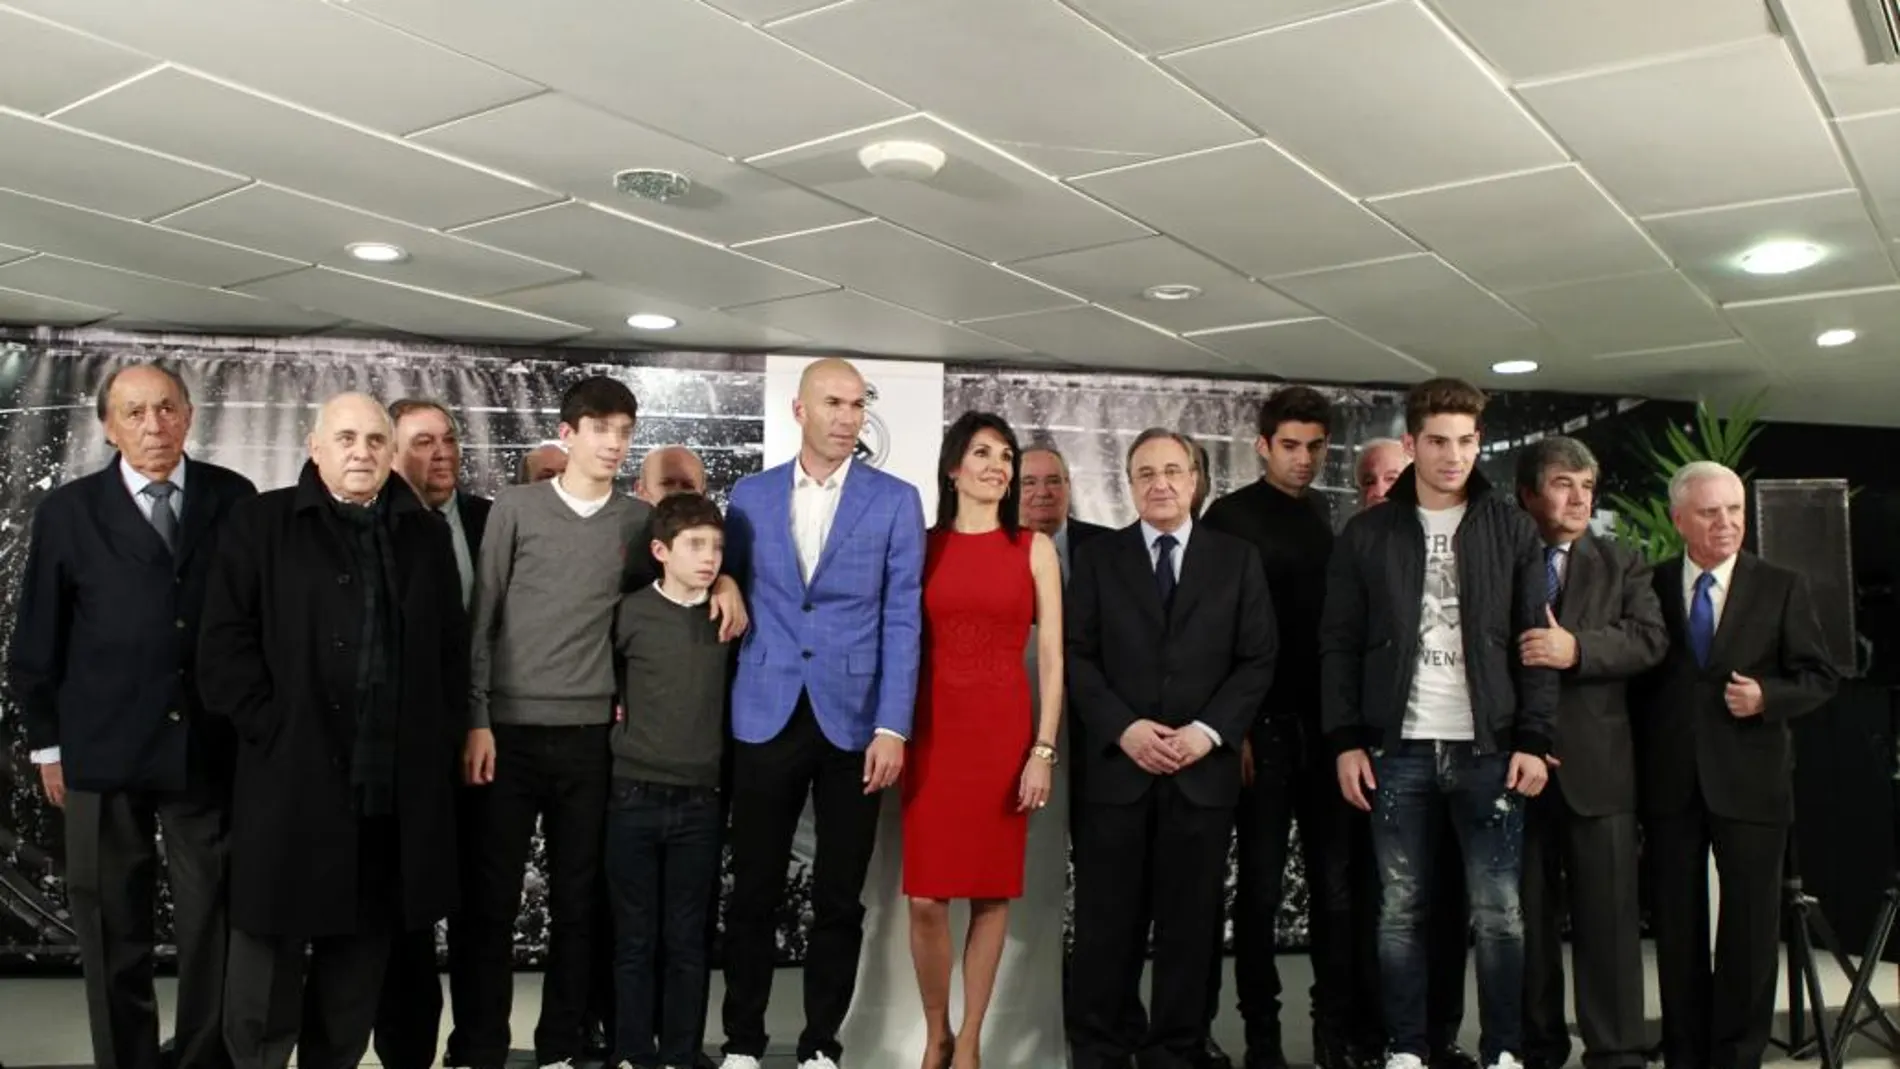 El francés Zinedine Zidane (5i) posa junto a su mujer, Véronique Zidane (c), y otros miembros de su famillia, con el presidente del Real Madrid, Florentino Pérez (5d), y los miembros de la Junta Directiva del club